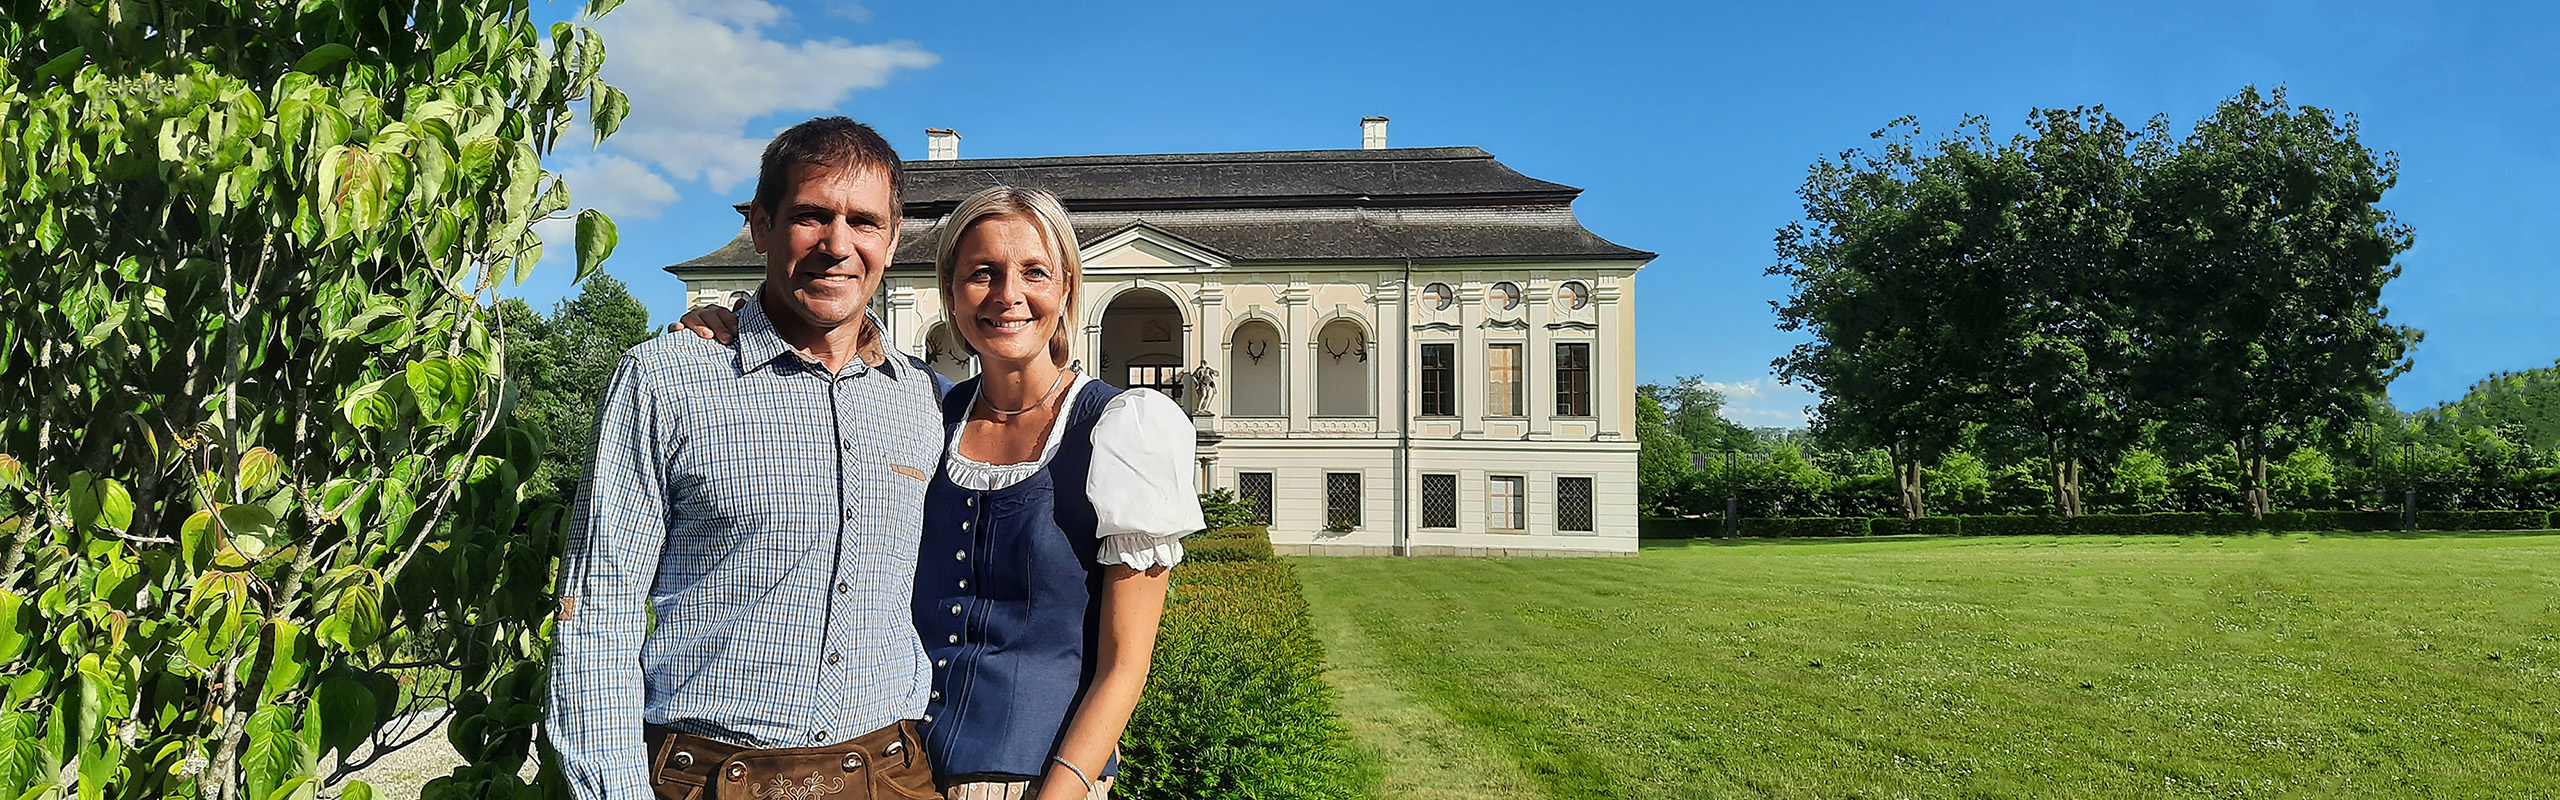 Gerald und Martina Berger vor dem Schloss Hohenbrunn